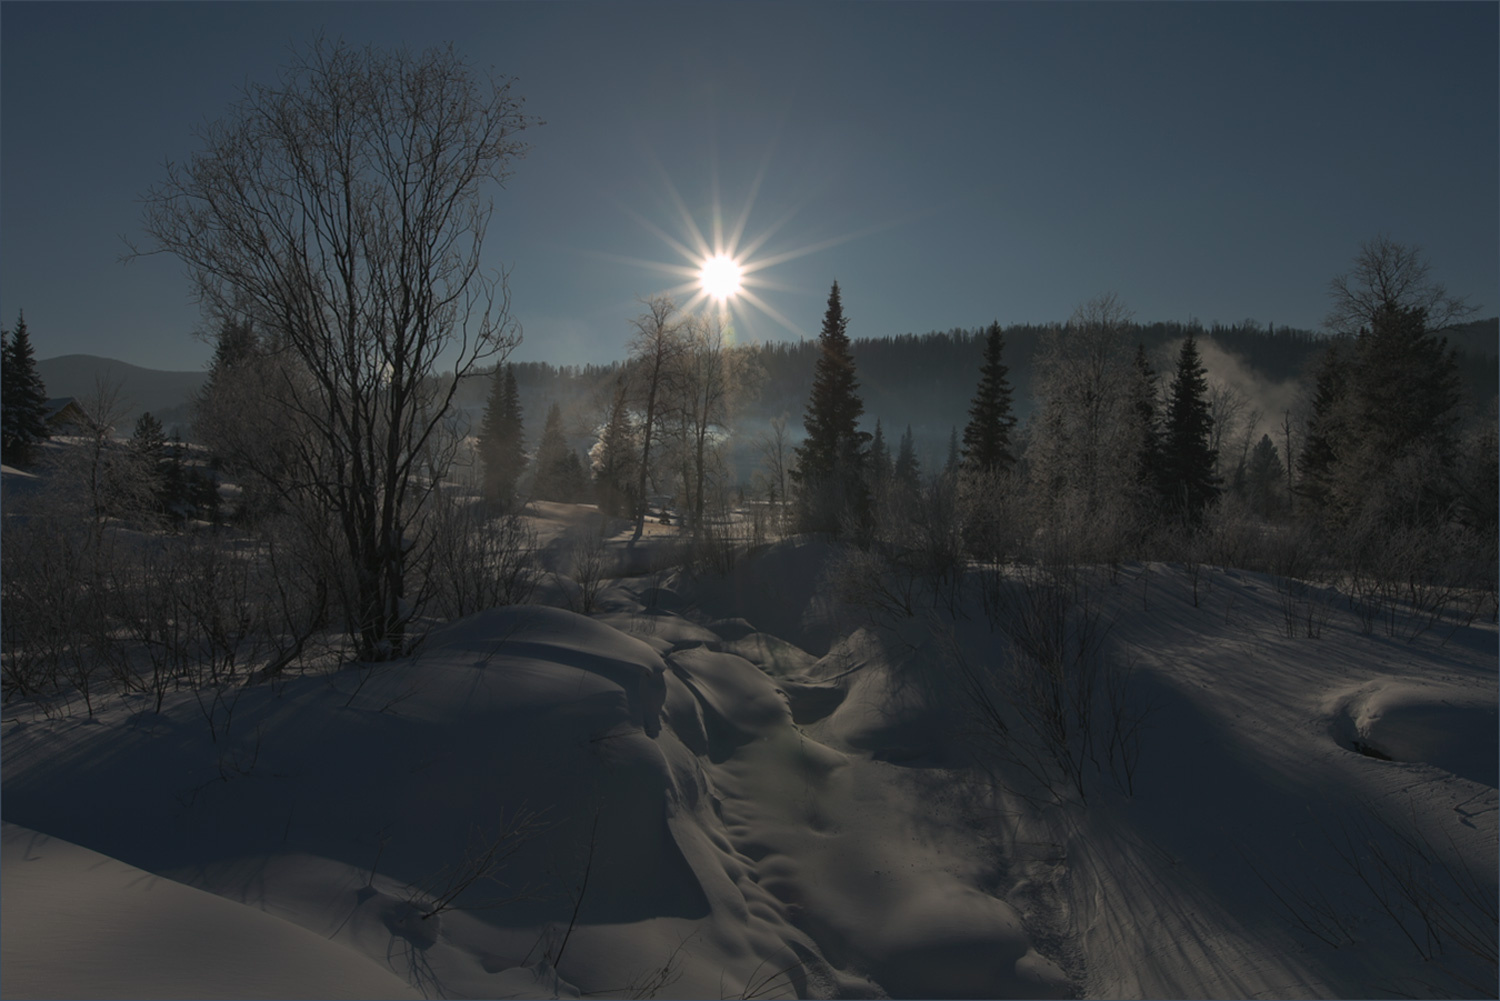 Лучами утренней звезды... Сибирь рассвет красивые места много снега пейзаж тепло душевно утернняя звезда